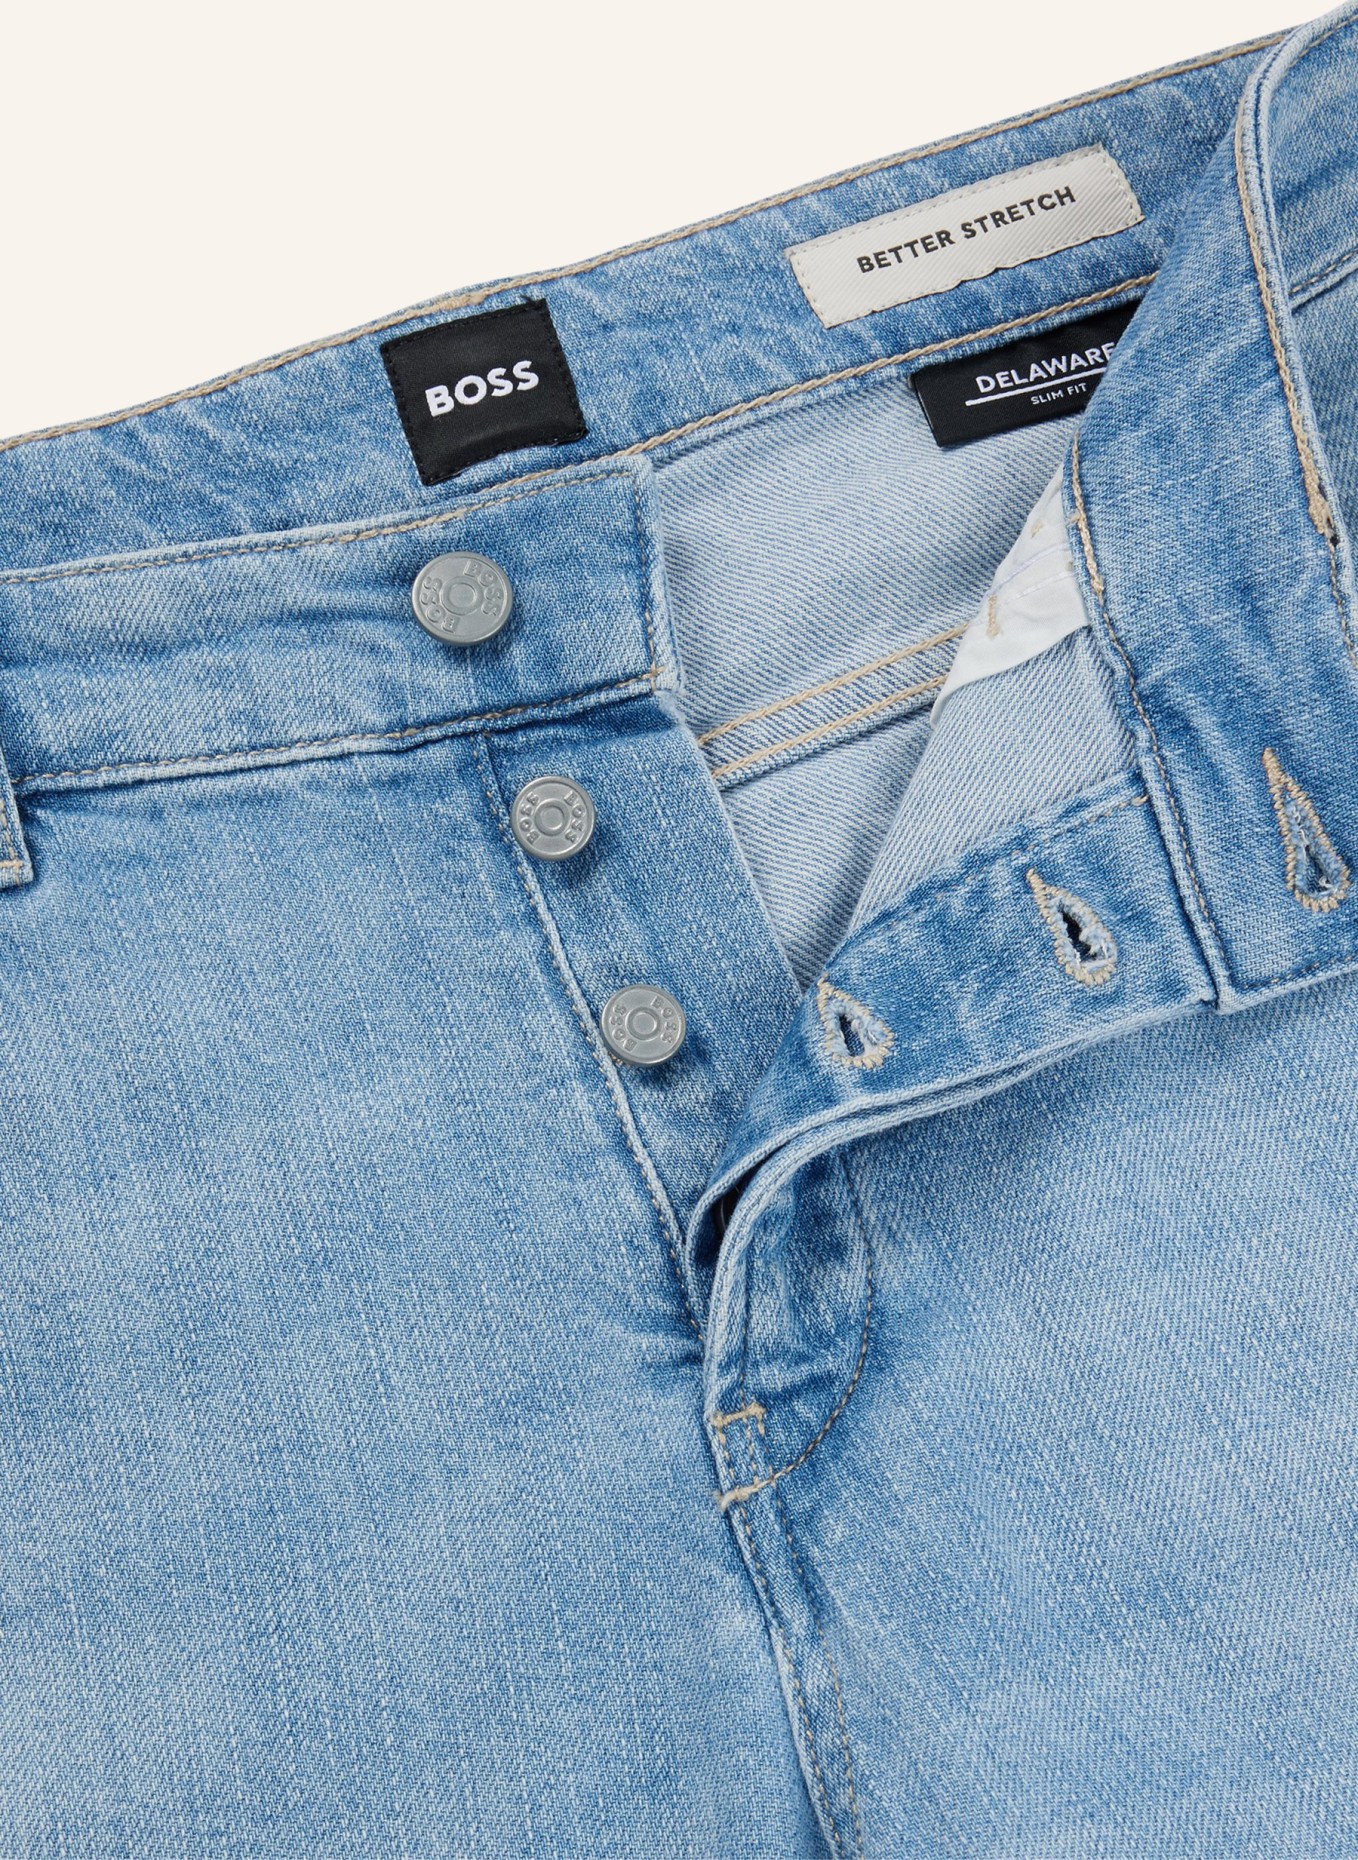 BOSS Jeans DELAWARE3-1-BF Slim Fit, Farbe: TÜRKIS (Bild 2)